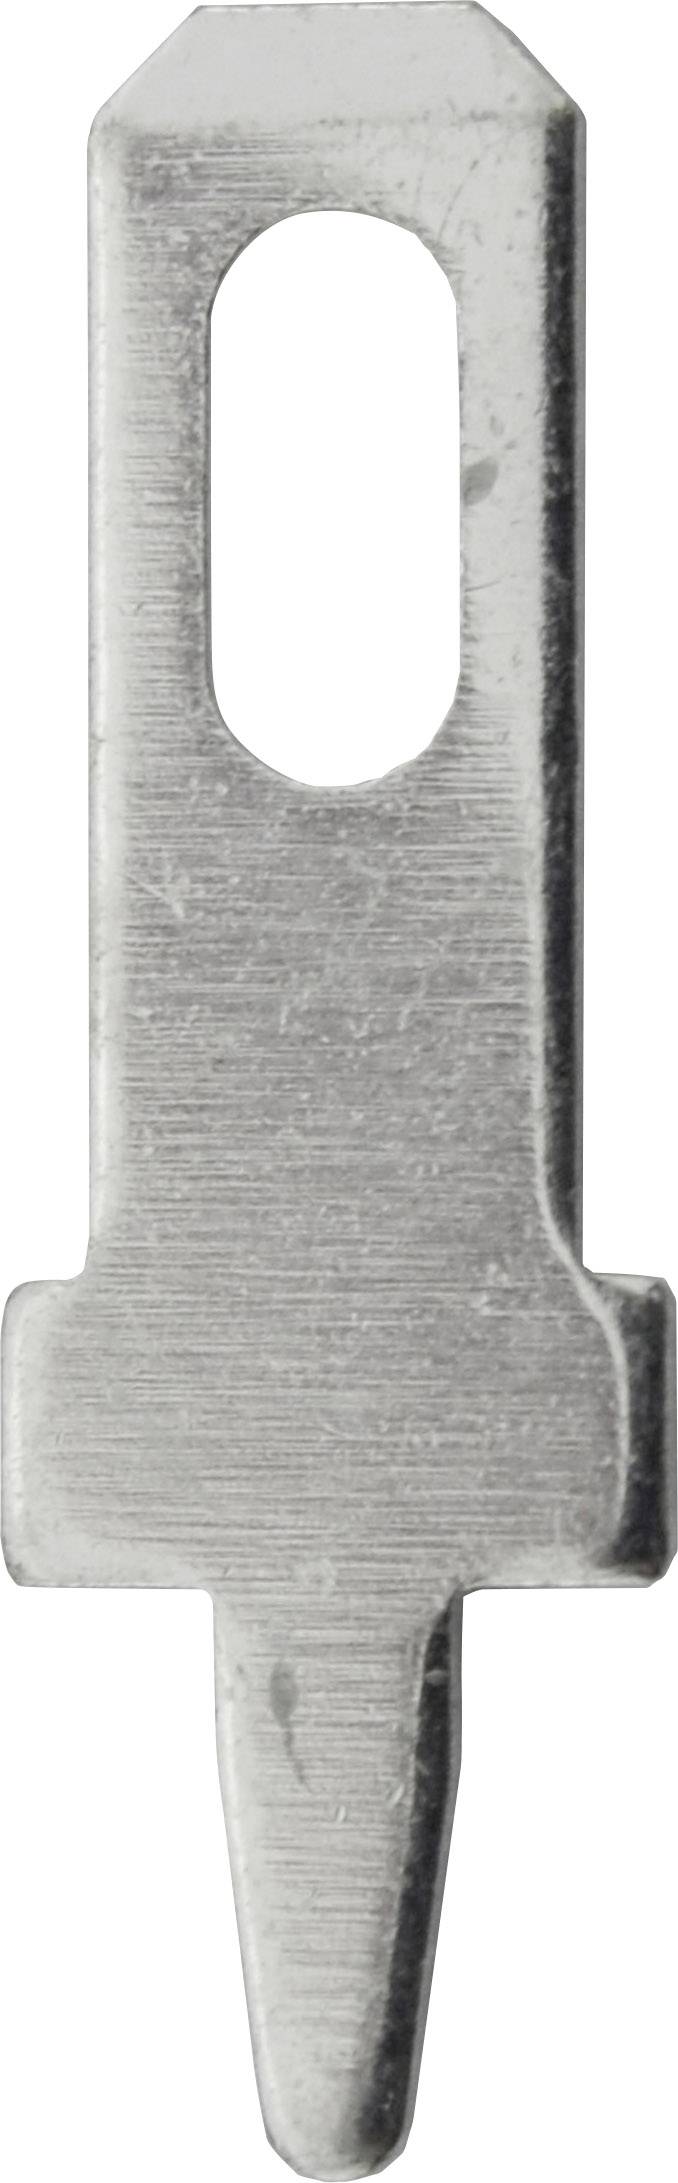 VOGT Steckzunge Steckbreite: 2.8 mm Steckdicke: 0.8 mm 180 ° Unisoliert Metall Vogt Verbindungstechn